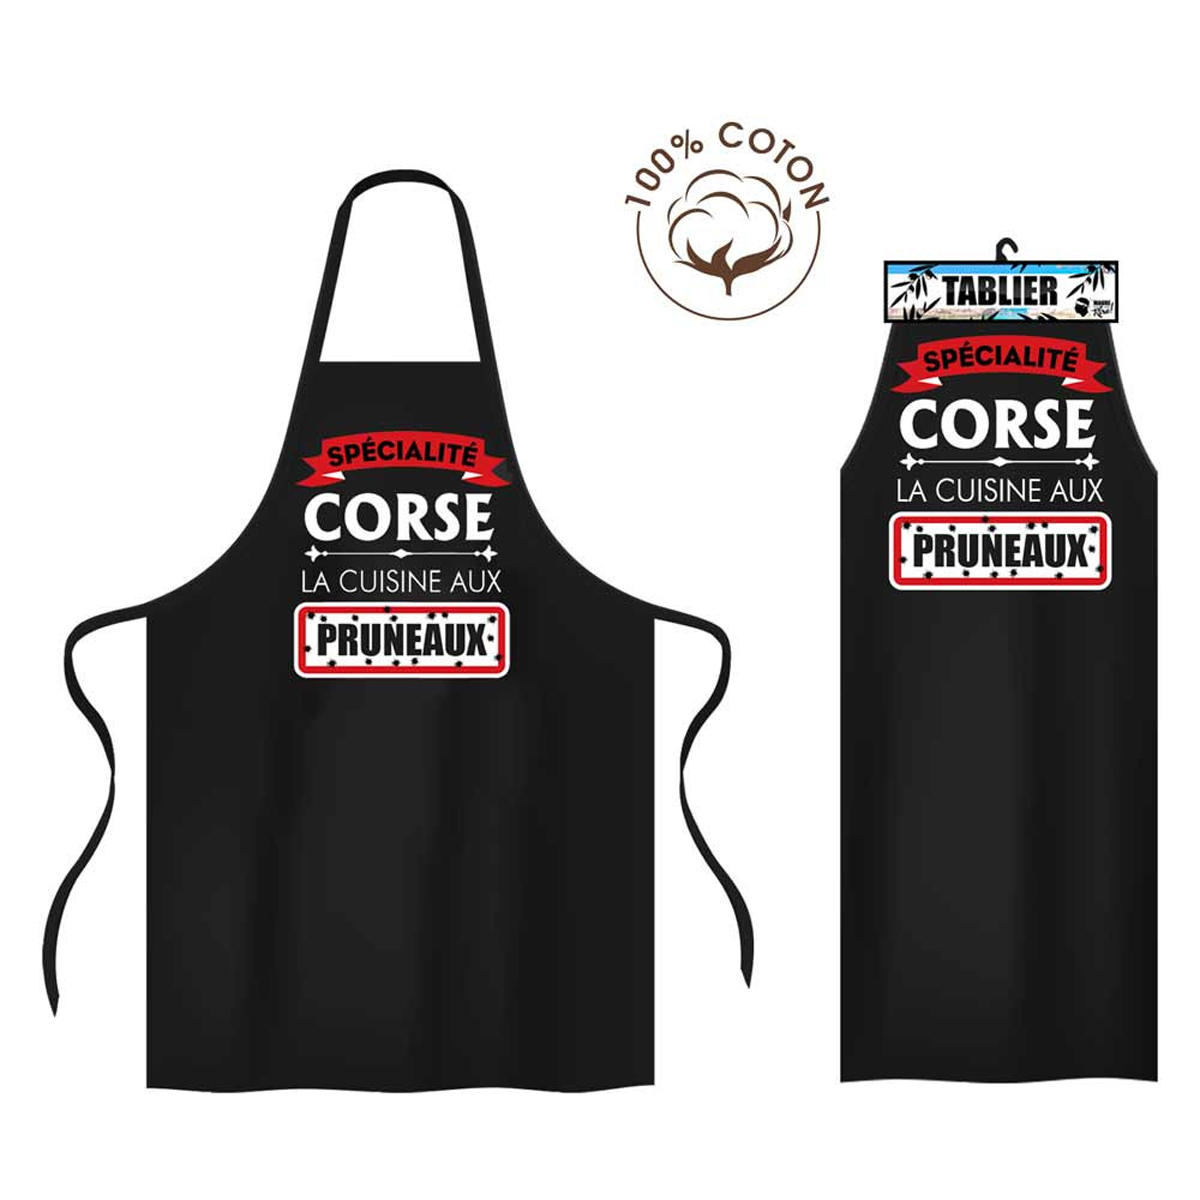 Tablier coton 'Corse' noir (Spécialité Corse la cuisine aux pruneaux) -  80x70 cm - [R1633]